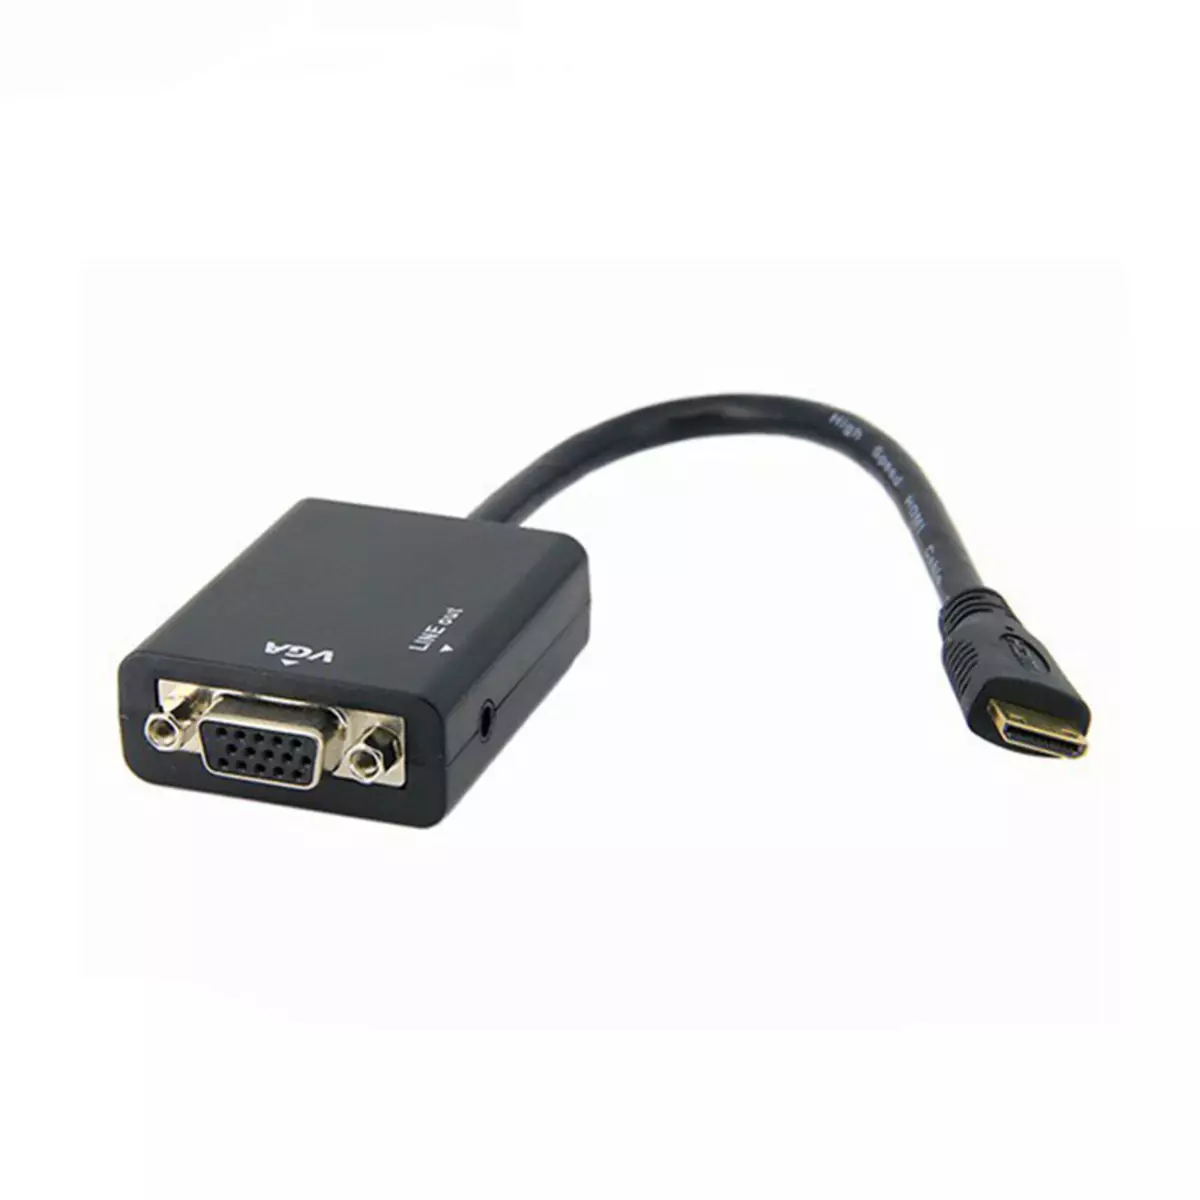 HDMI-VGA ADAPTER.